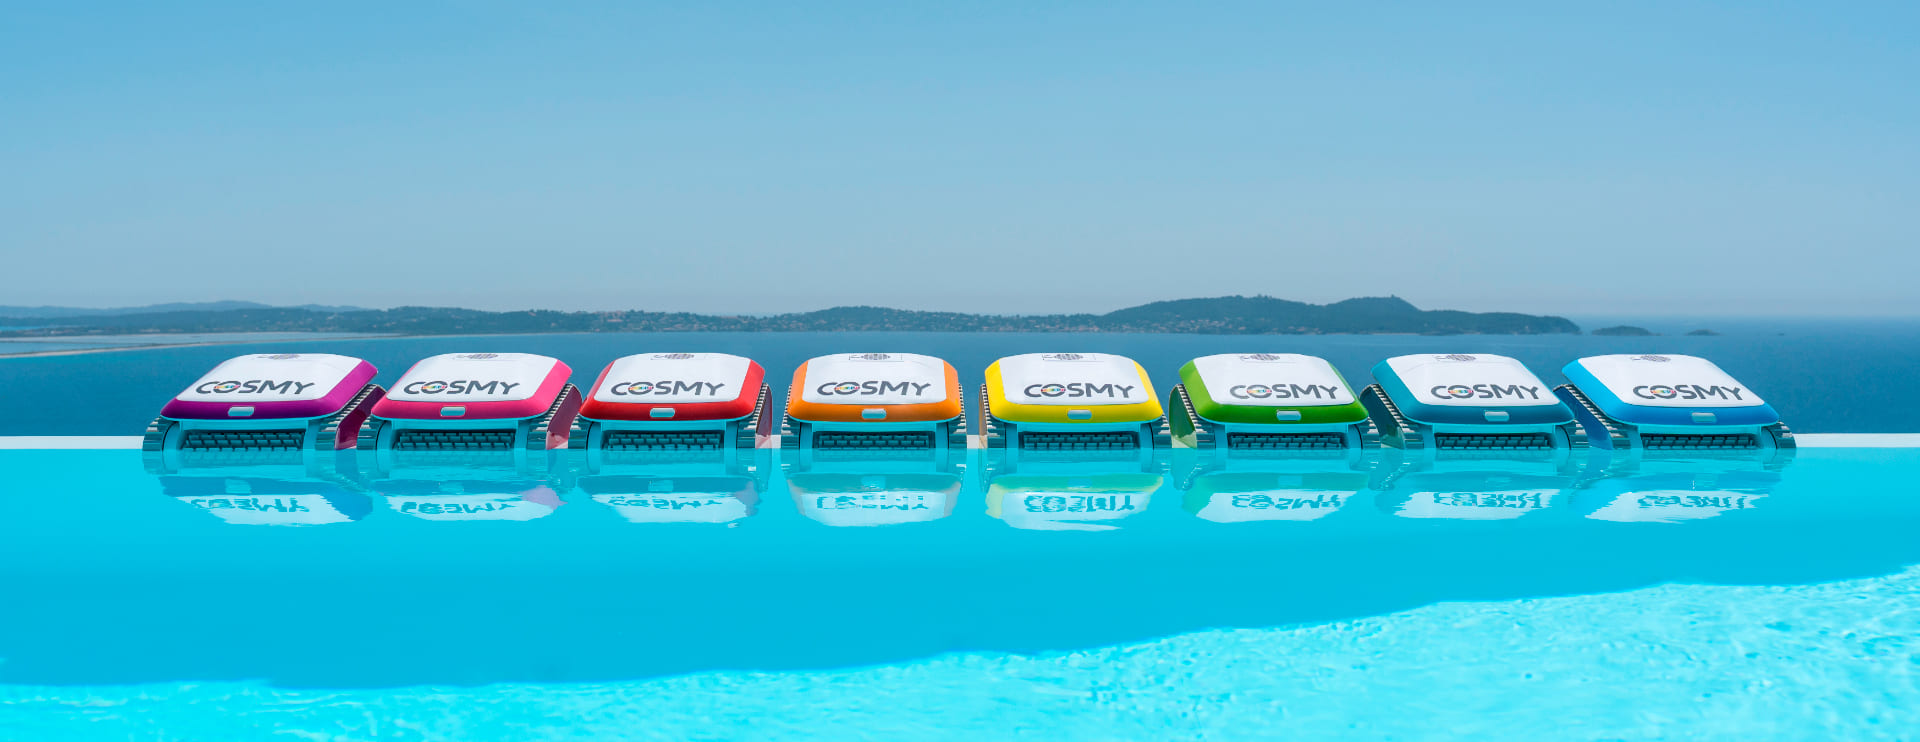 Les robots cosmy en plusieurs couleur sur une piscine